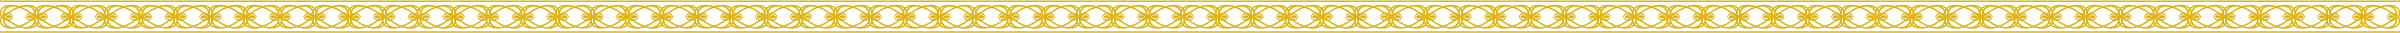 Gold ornate border divider